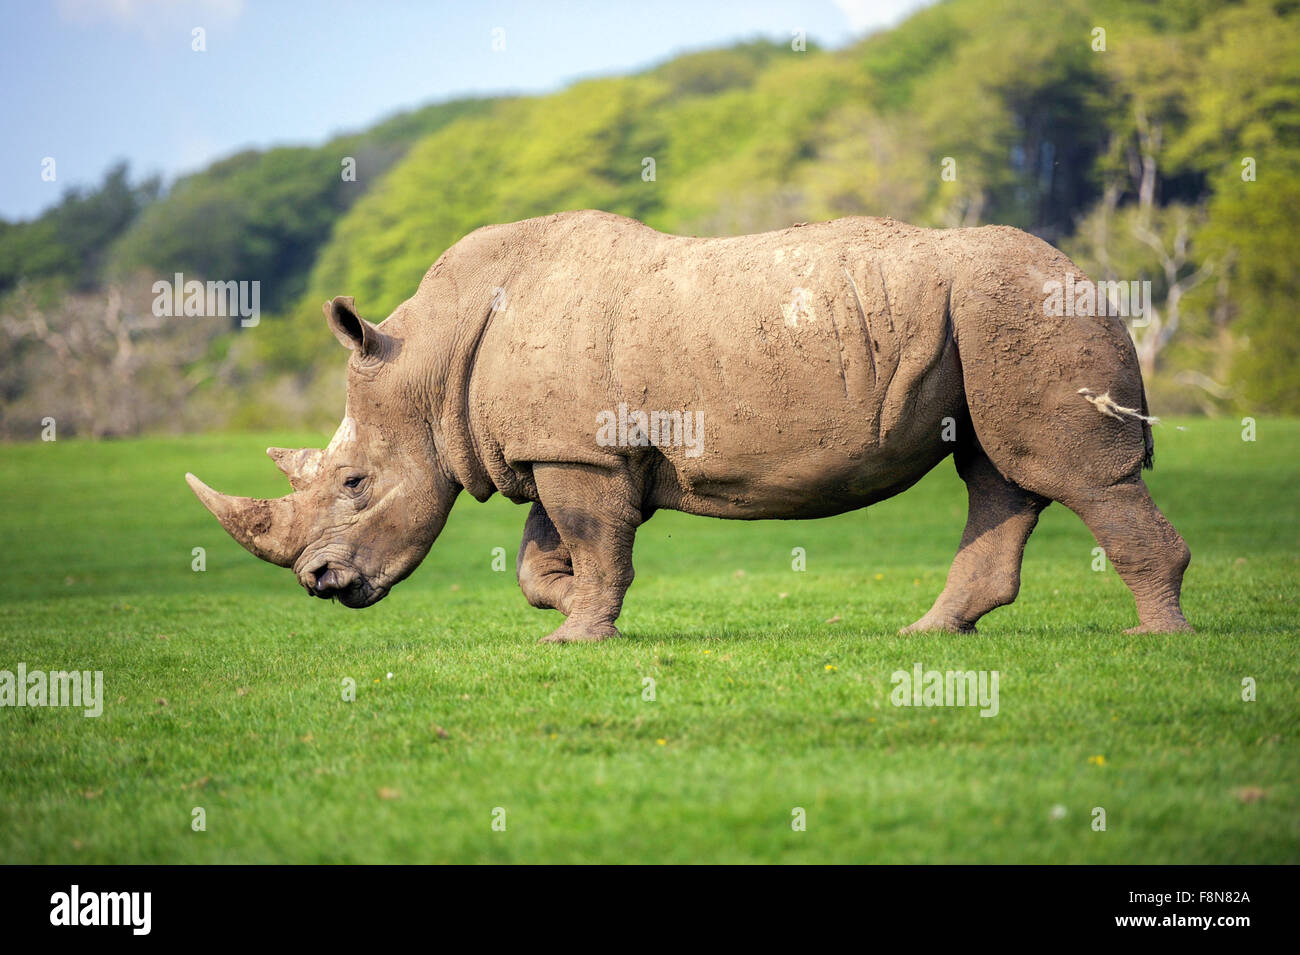 Vue latérale d'un rhinocéros noir debout dans un champ Banque D'Images